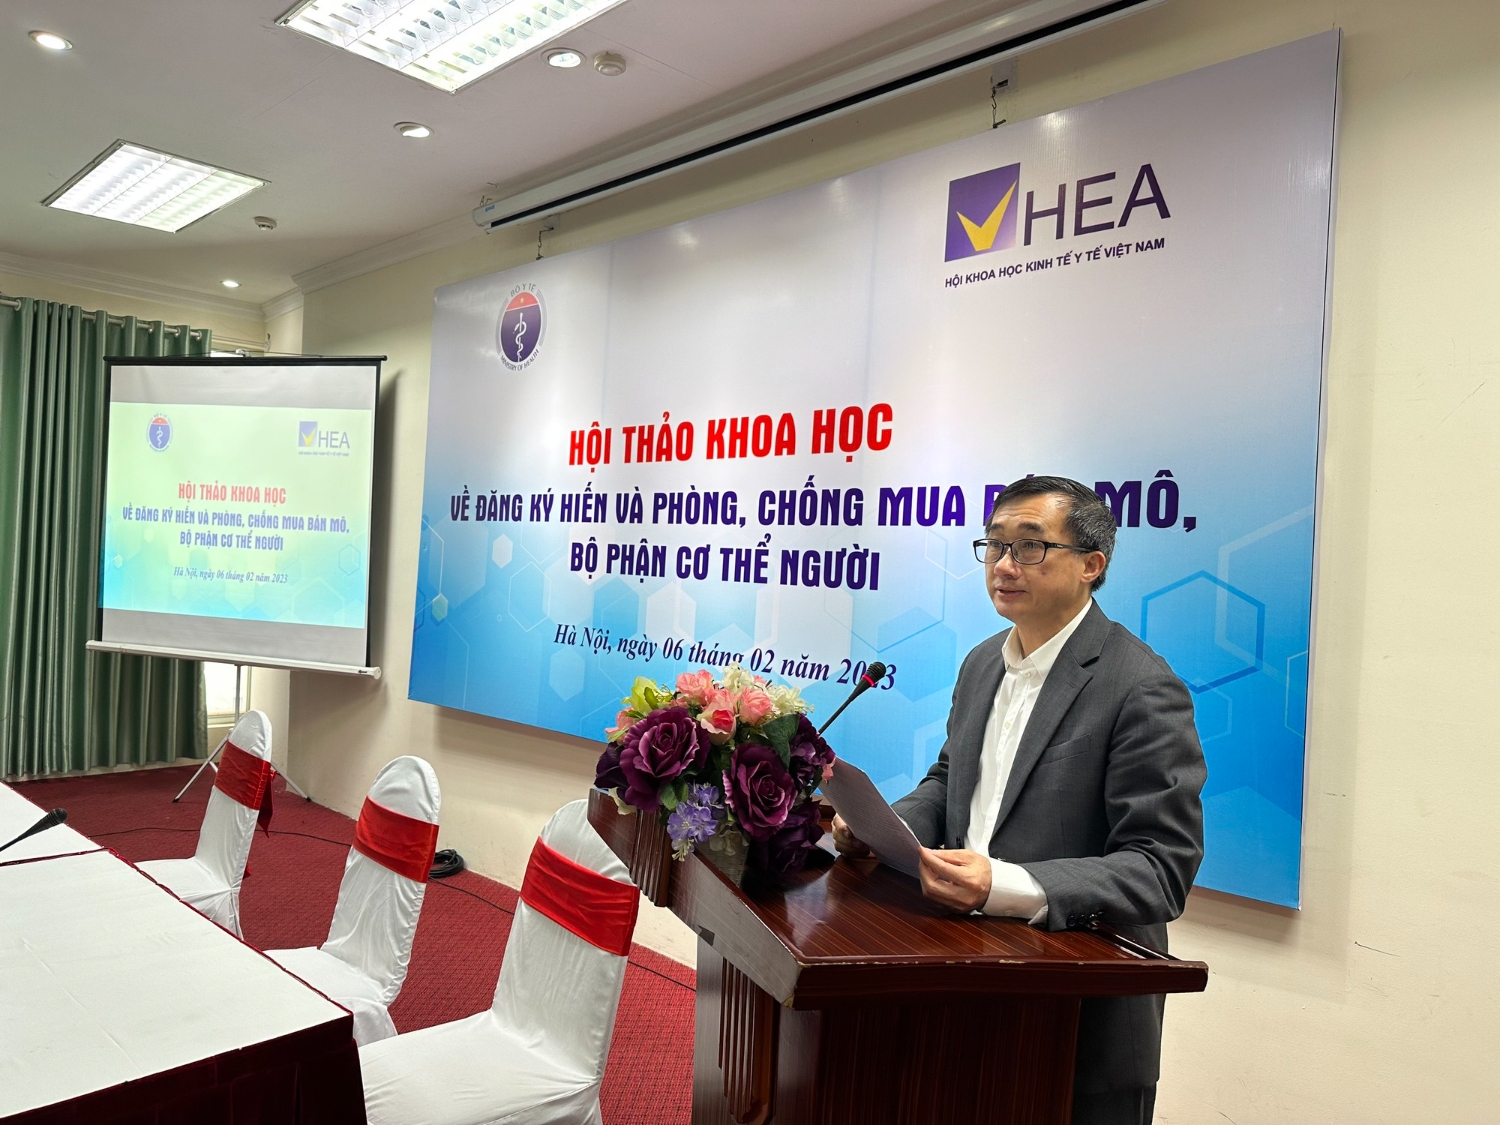 GS.TS Trần Văn Thuấn – Thứ trưởng Bộ Y tế cho biết Việt Nam đã ghép được 8 loại bộ phận cơ thể người với 7.297 ca ghép tạng.